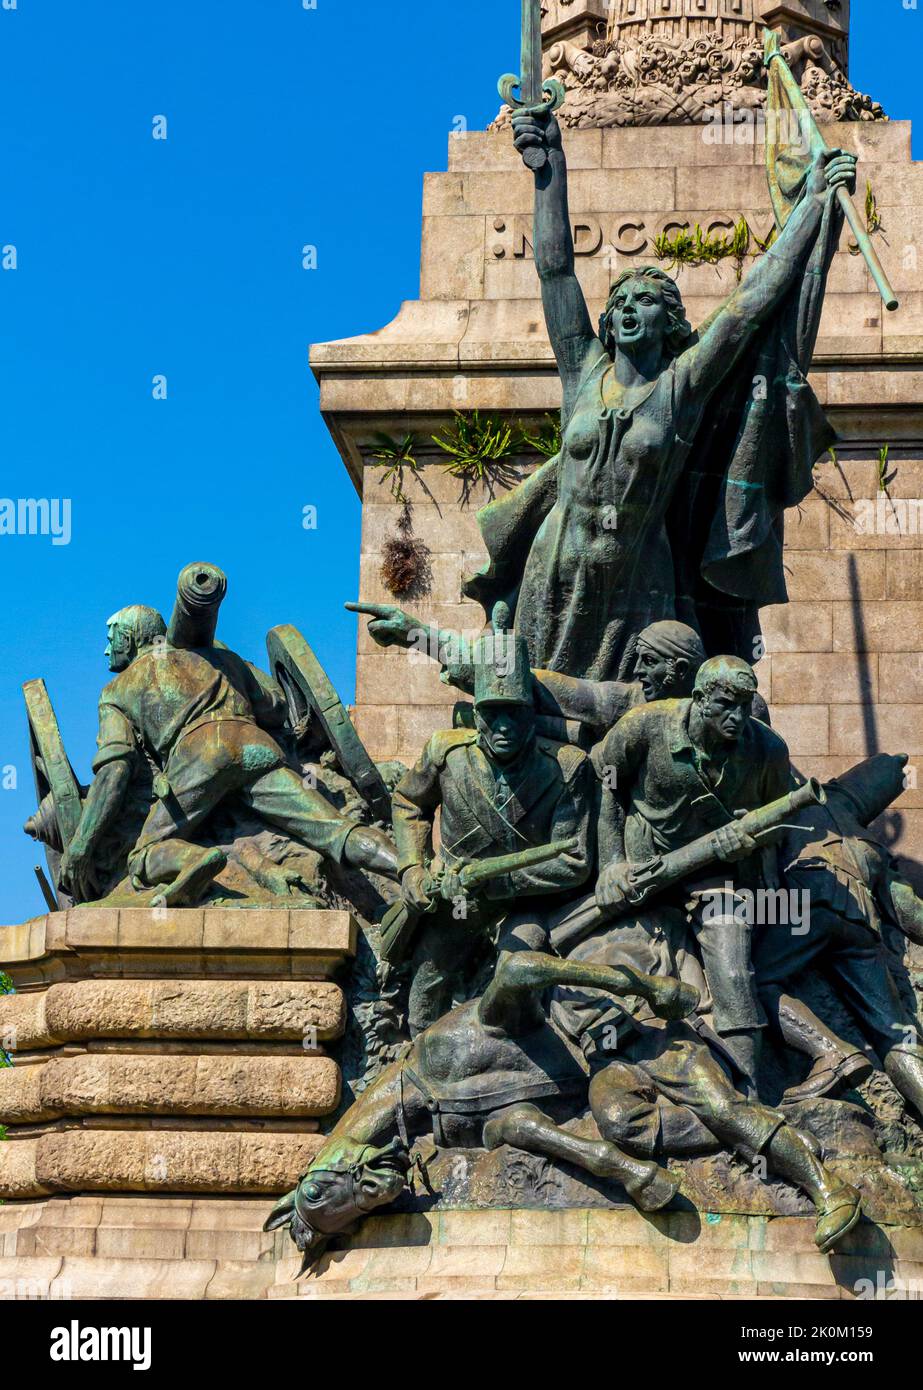 Monumento a Guerra Peninsular a Boavista Porto Portugal progettato da Jose Marques de Silva e Alves de Sousa per segnare la sconfitta dell'esercito francese. Foto Stock